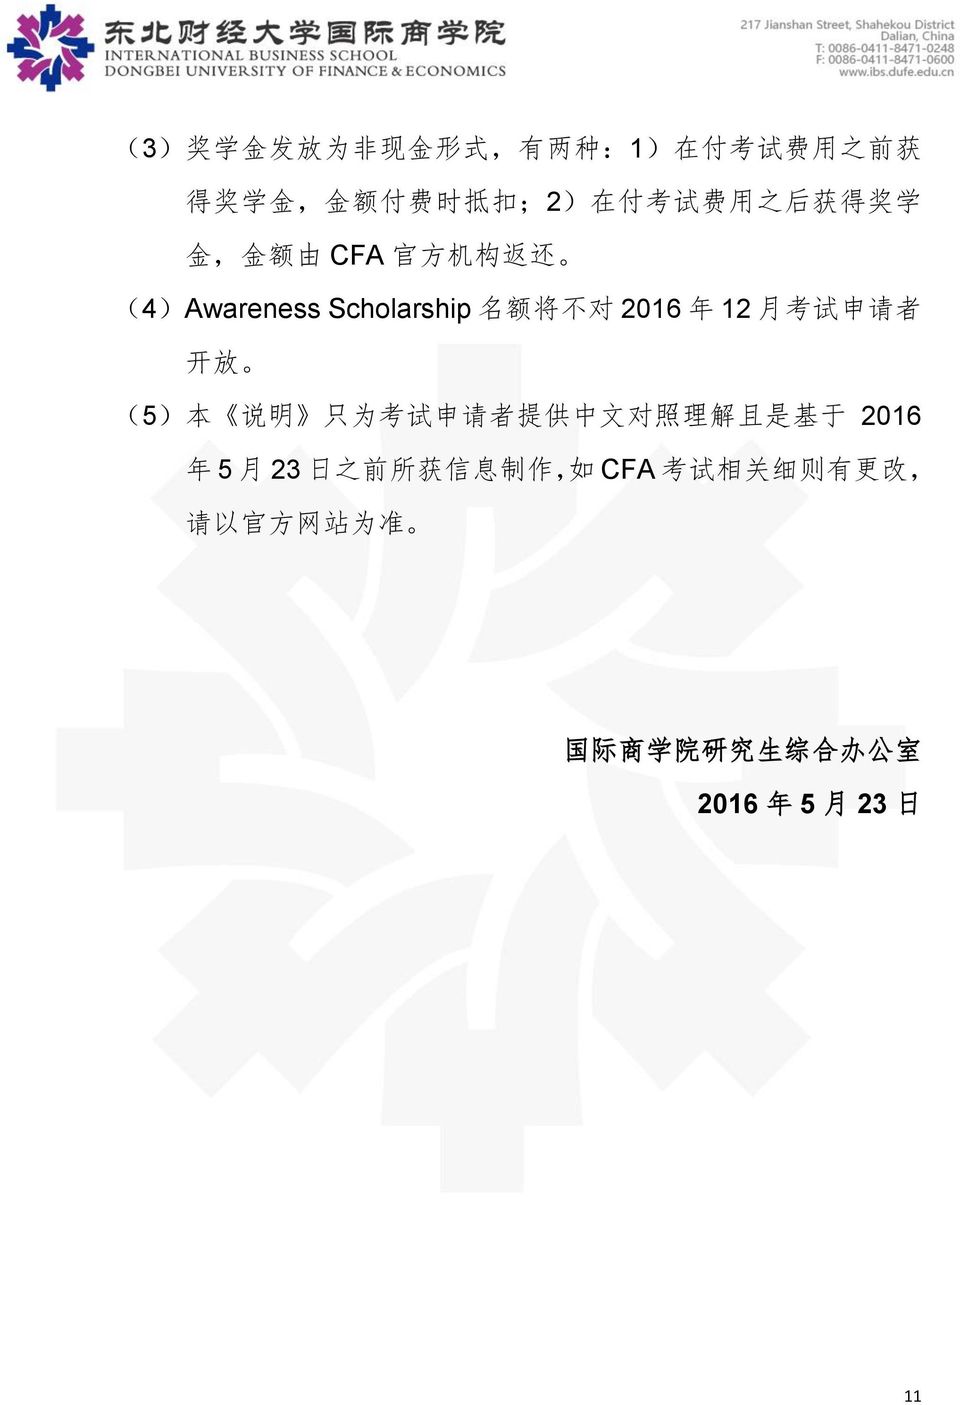 考 试 申 请 者 开 放 (5) 本 说 明 只 为 考 试 申 请 者 提 供 中 文 对 照 理 解 且 是 基 于 2016 年 5 月 23 日 之 前 所 获 信 息